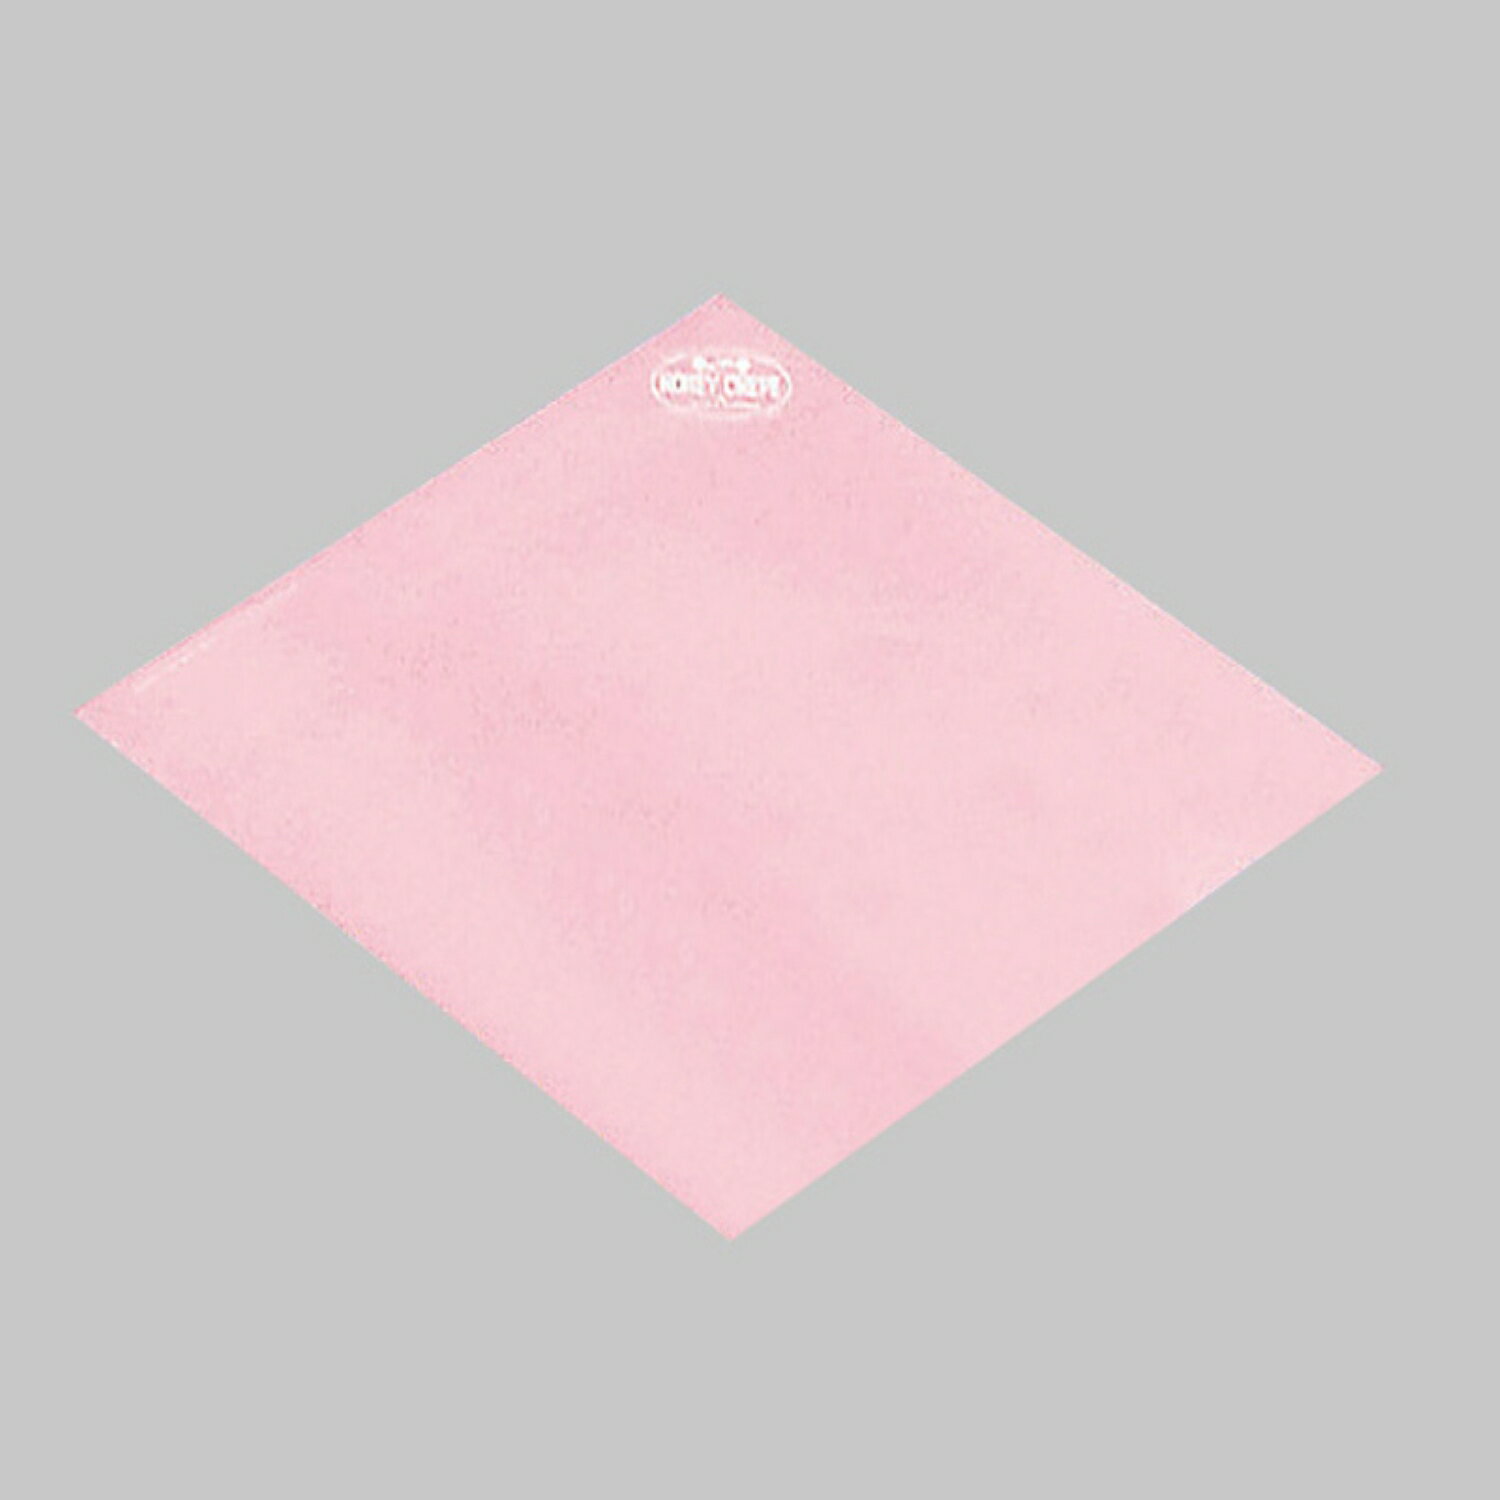 【3000枚】ハニークレープ包装紙 ピンク 00373889 プロステ